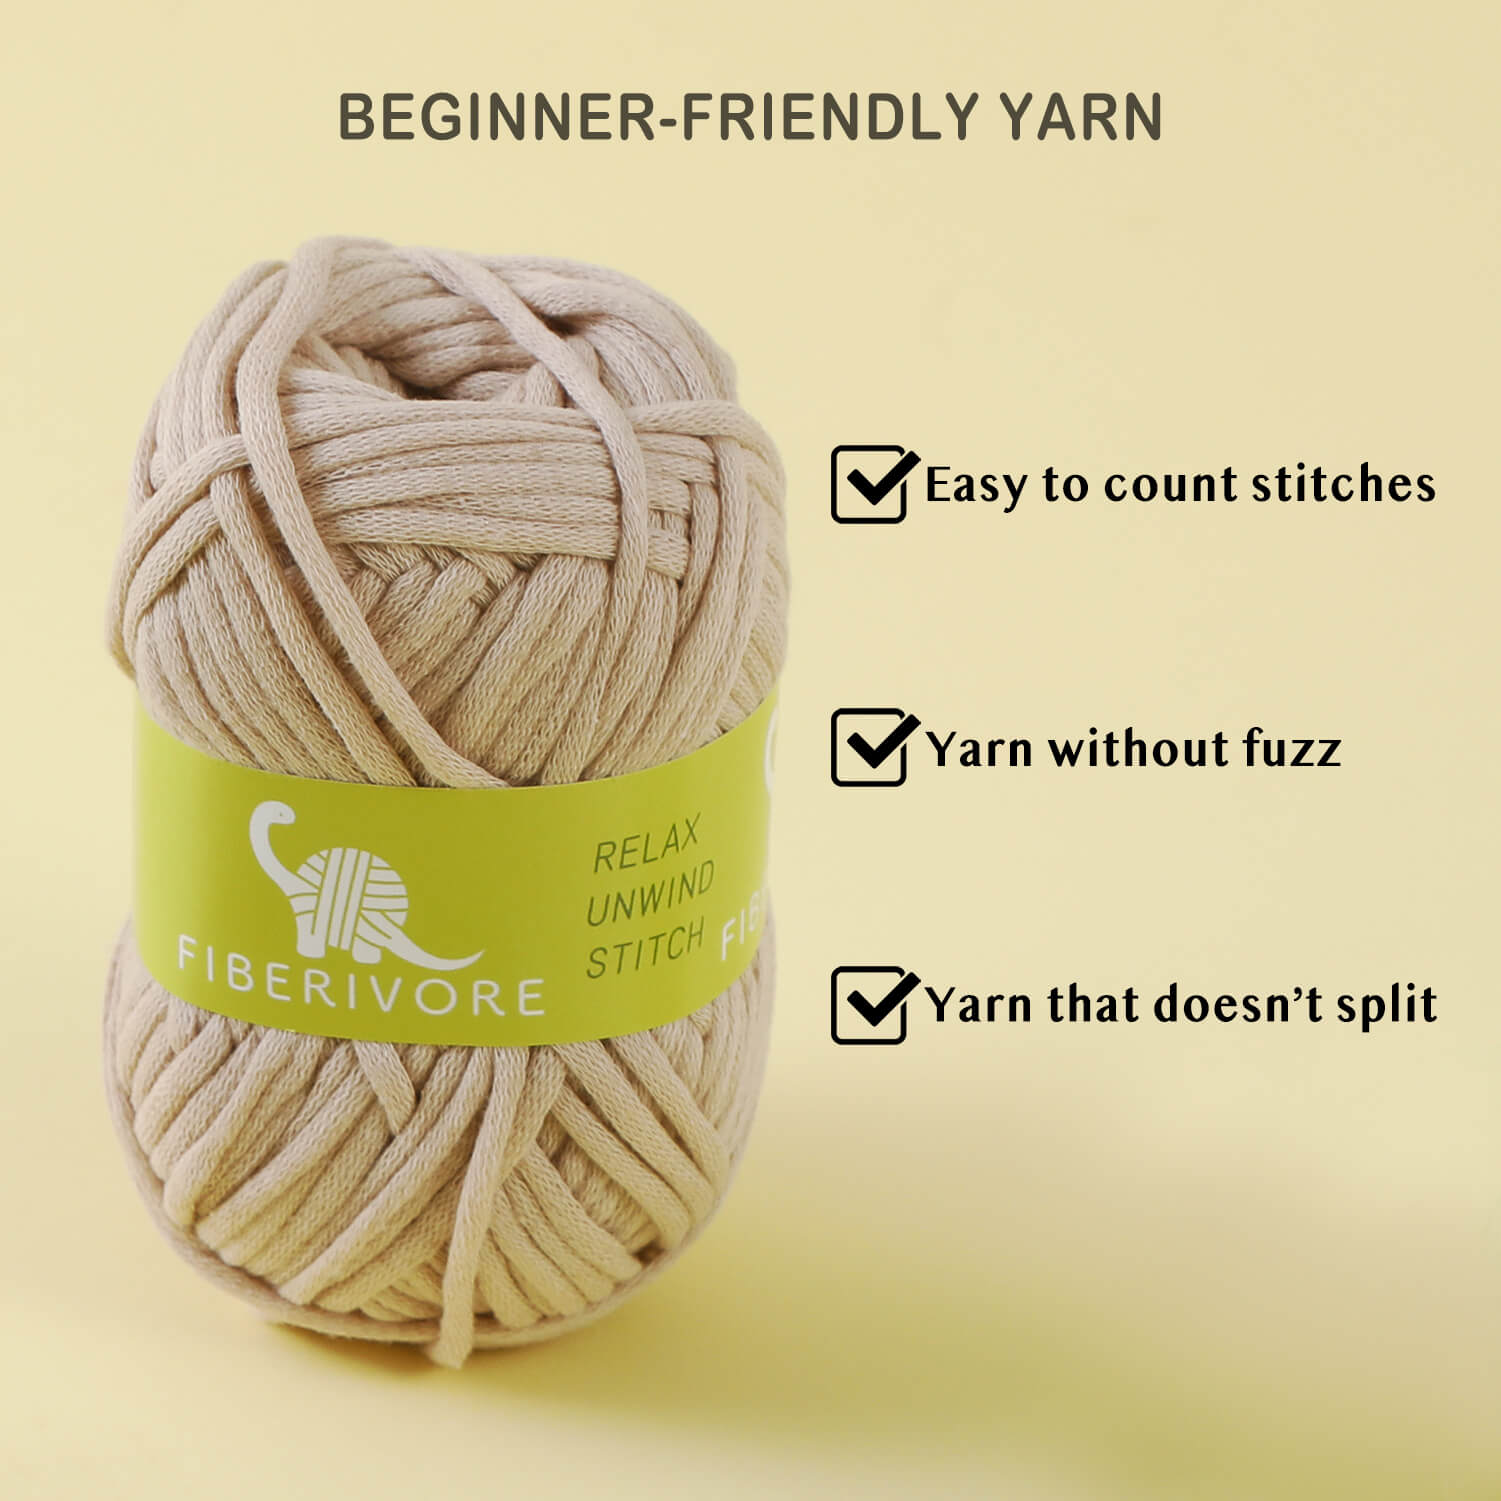 Crochet Kit for Beginners, Beginner Crochet Starter Kit w Step-by-Step  Video Tutorials, Learn to Crochet Kits for Adults & Kids, DIY Knitting